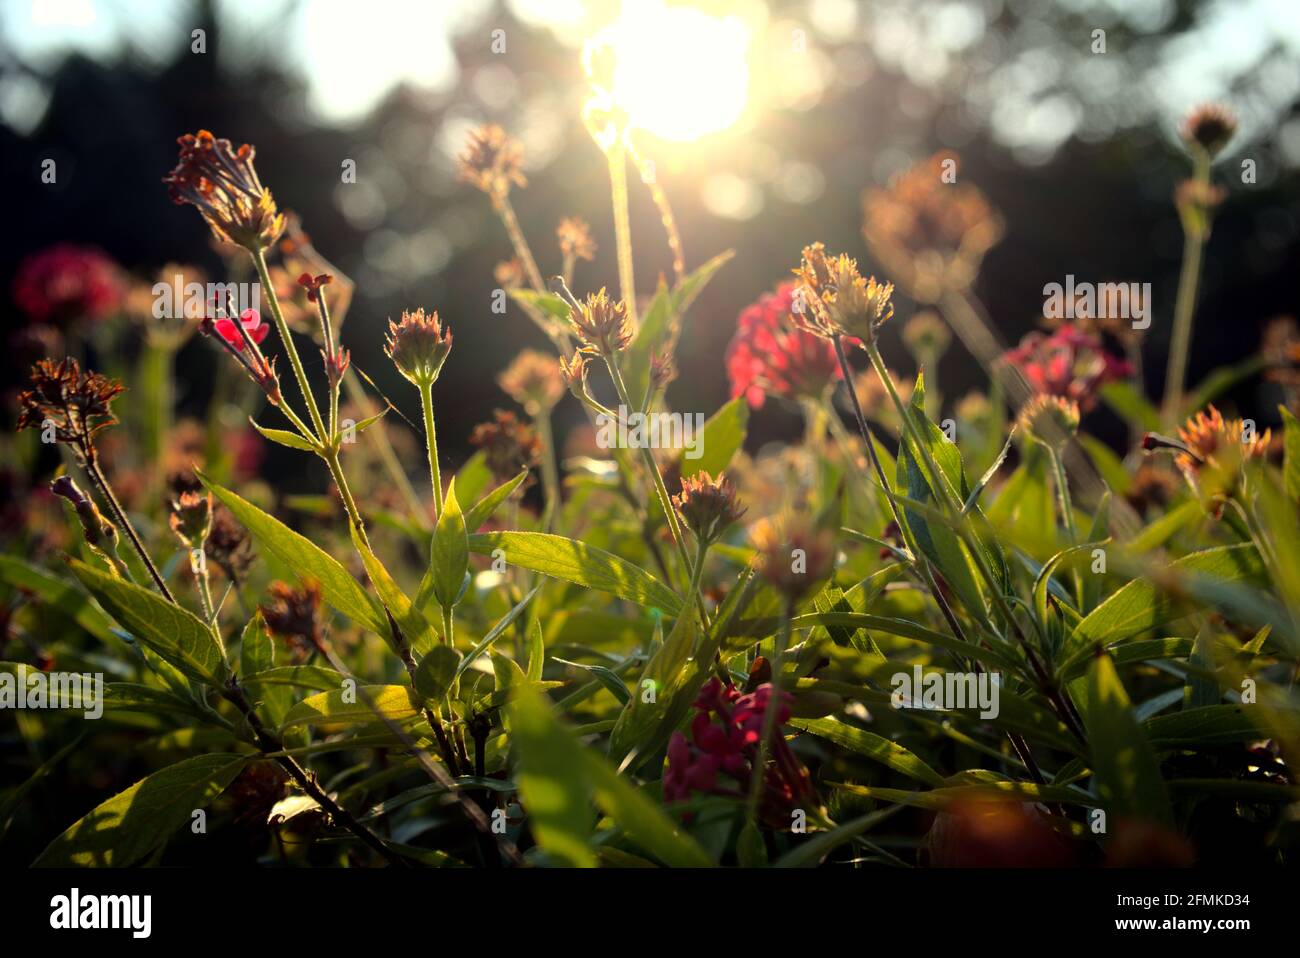 Schöne Blumen, Pflanze, Blüten Hintergrund. Botanik mit weichem Fokus, Bokeh abstrakt. Jahreszeitlich verändernd, Frühling, Sommer, Park, urban, Schönheit in der Natur. Stockfoto